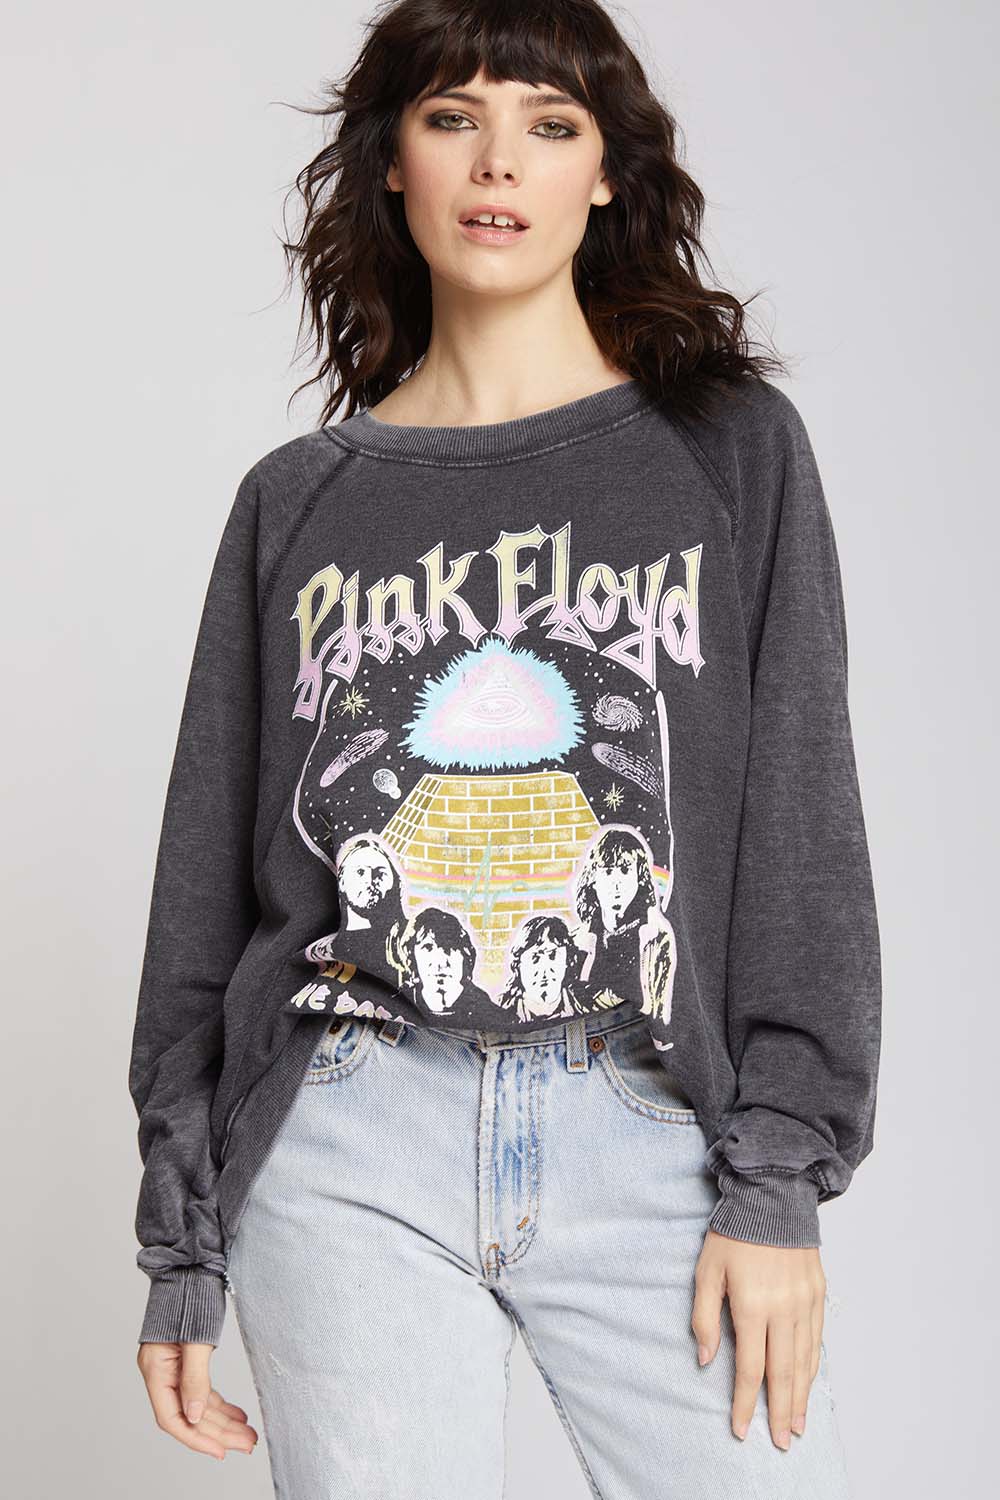 Pink Floyd The Dark Side Of The Moon Sweatshirt